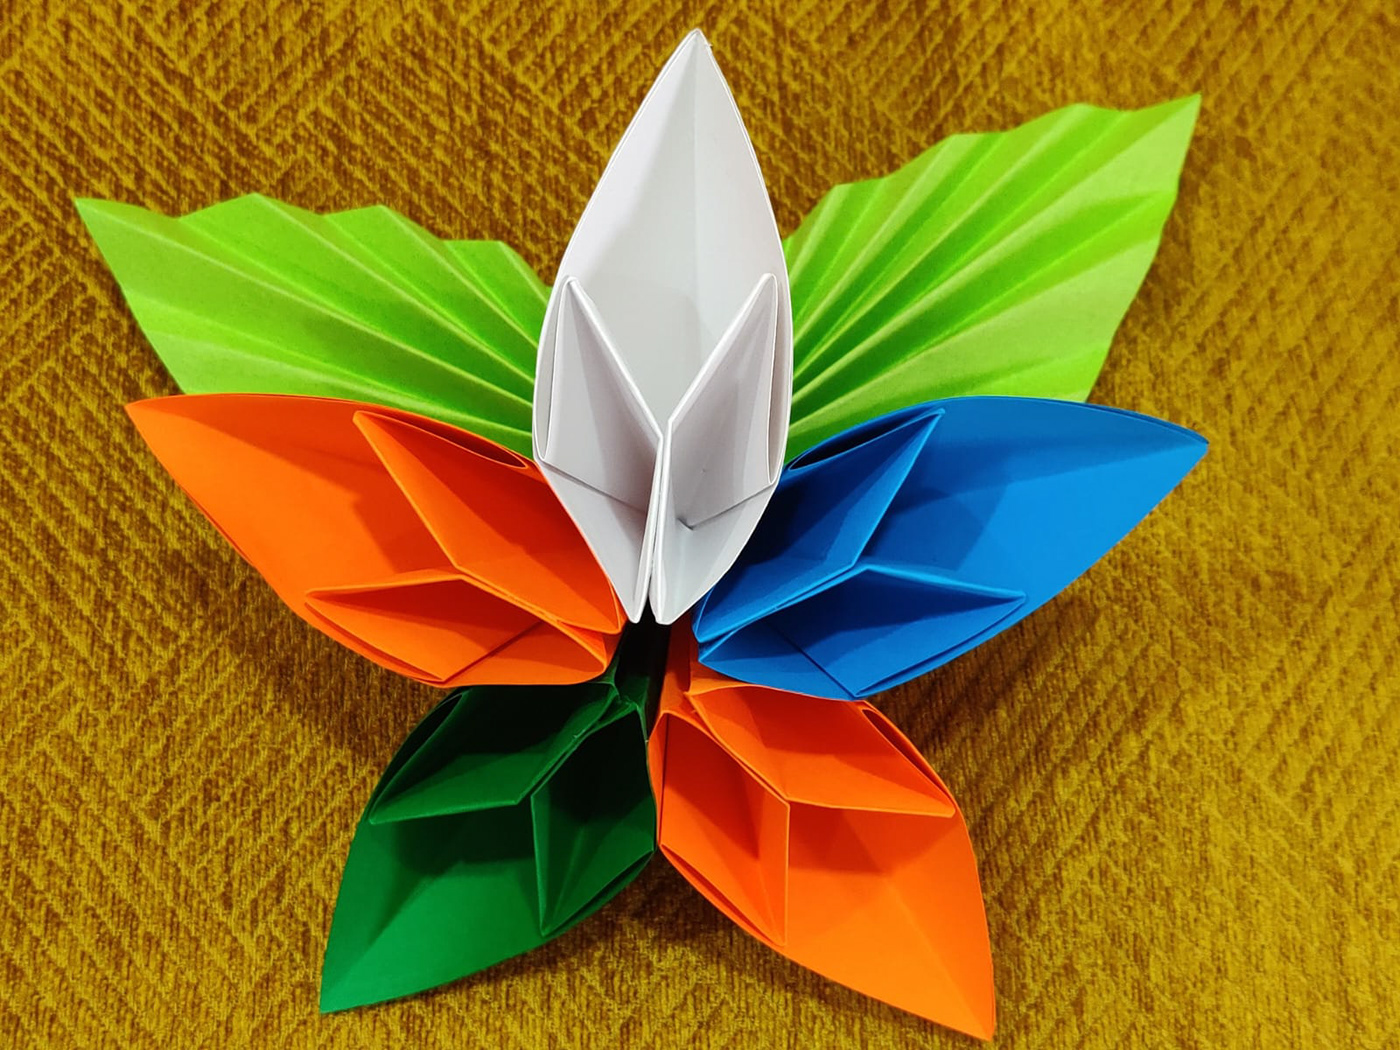 Image may contain: pinwheel and origami